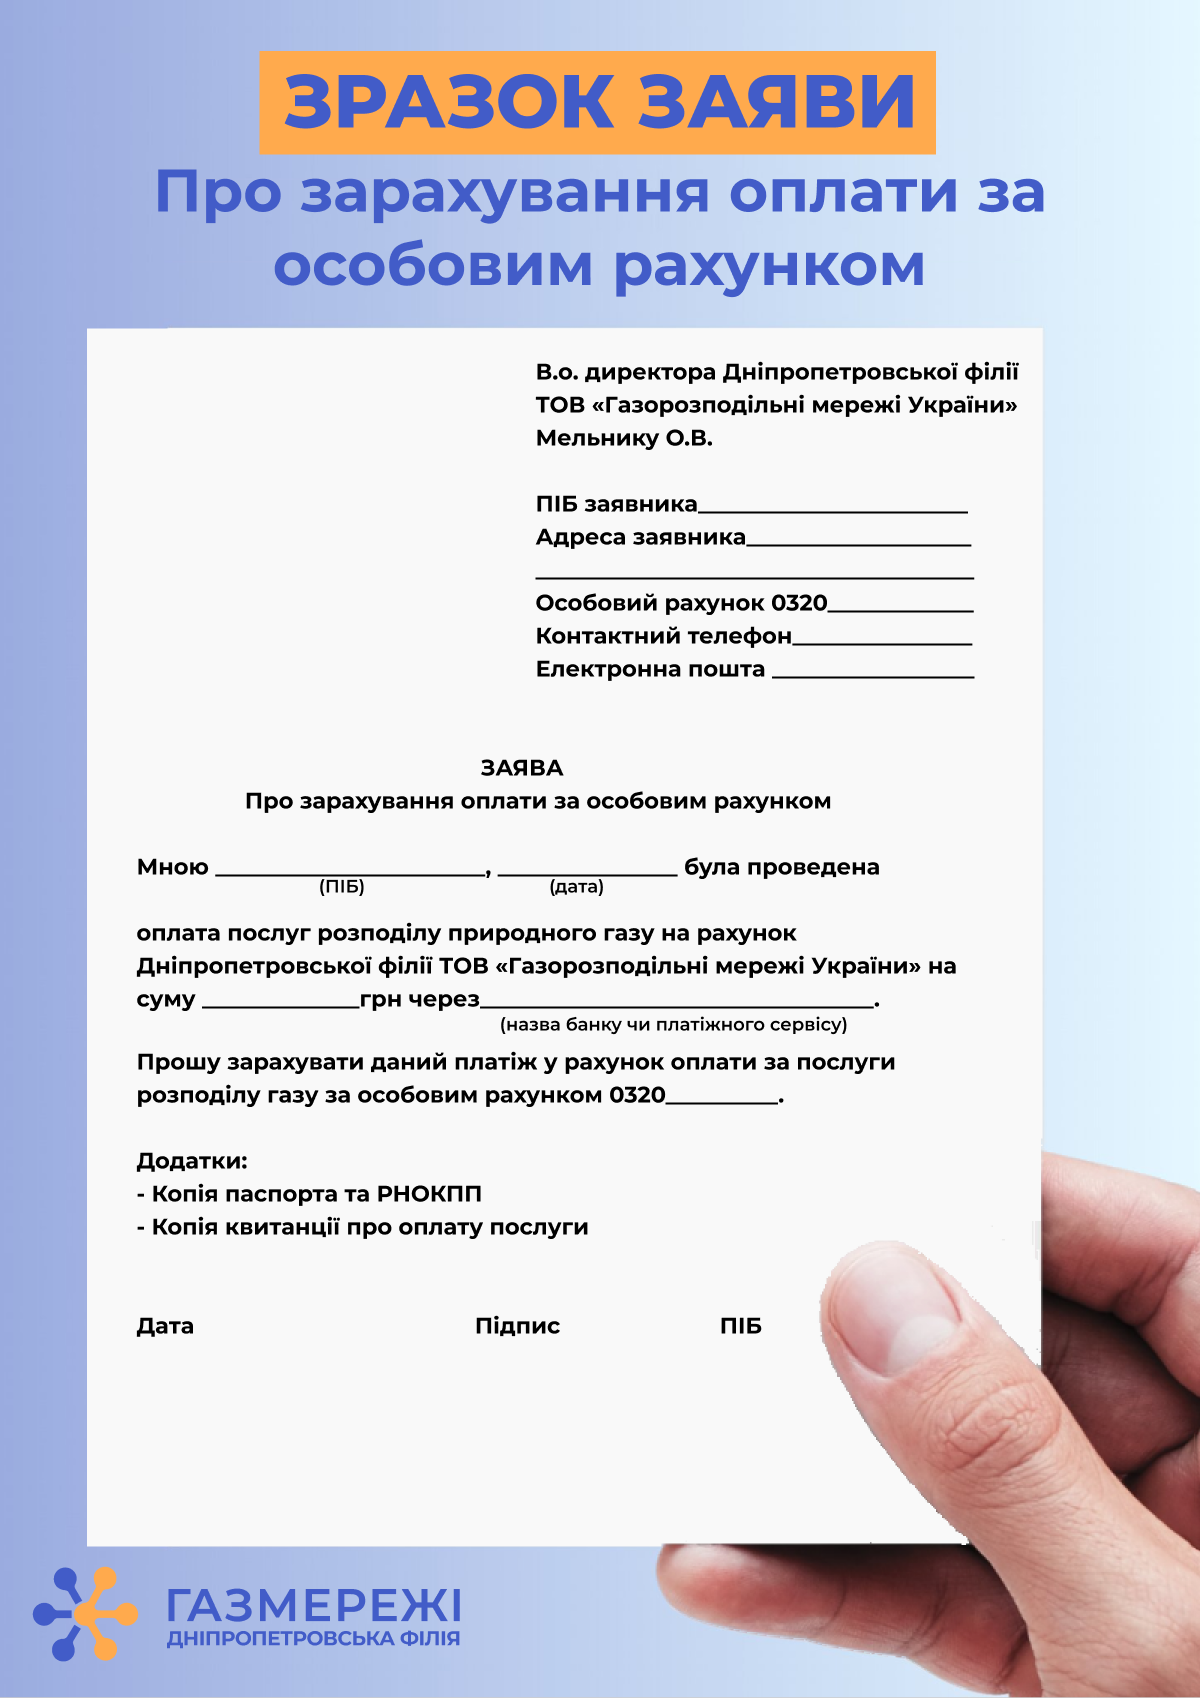 Дніпропетровська філія «Газмережі»: як діяти, якщо при сплаті за розподіл газу не вказали свої дані